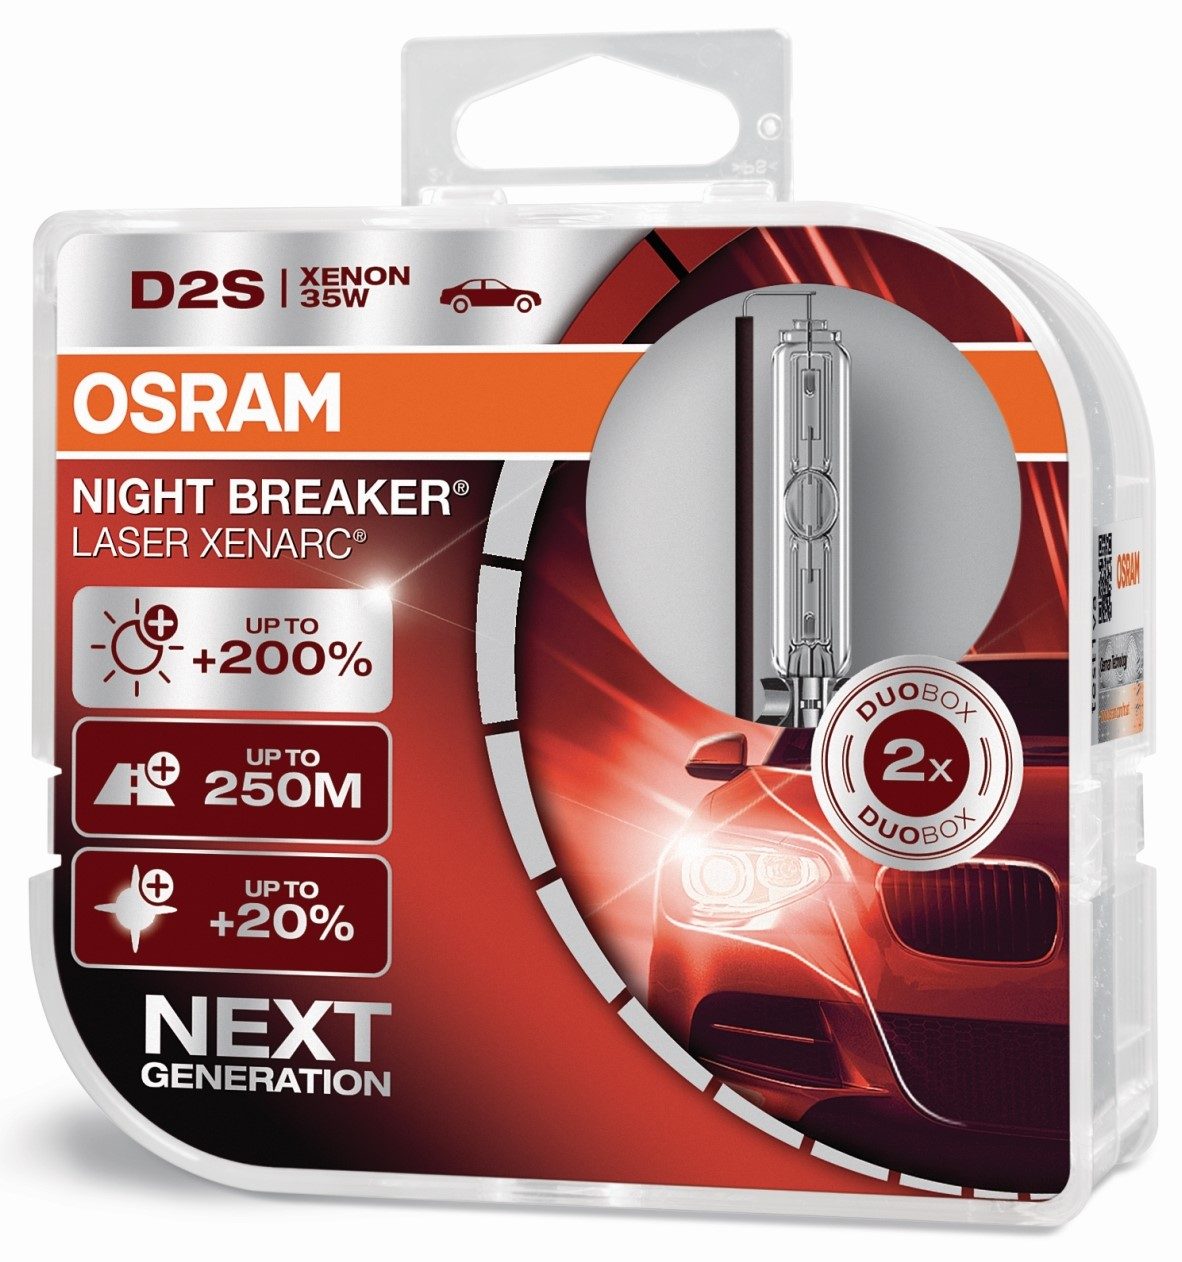 Osram D2S Xenon Lamp 35W Cool Blue Boost P32d-2 Duobox 